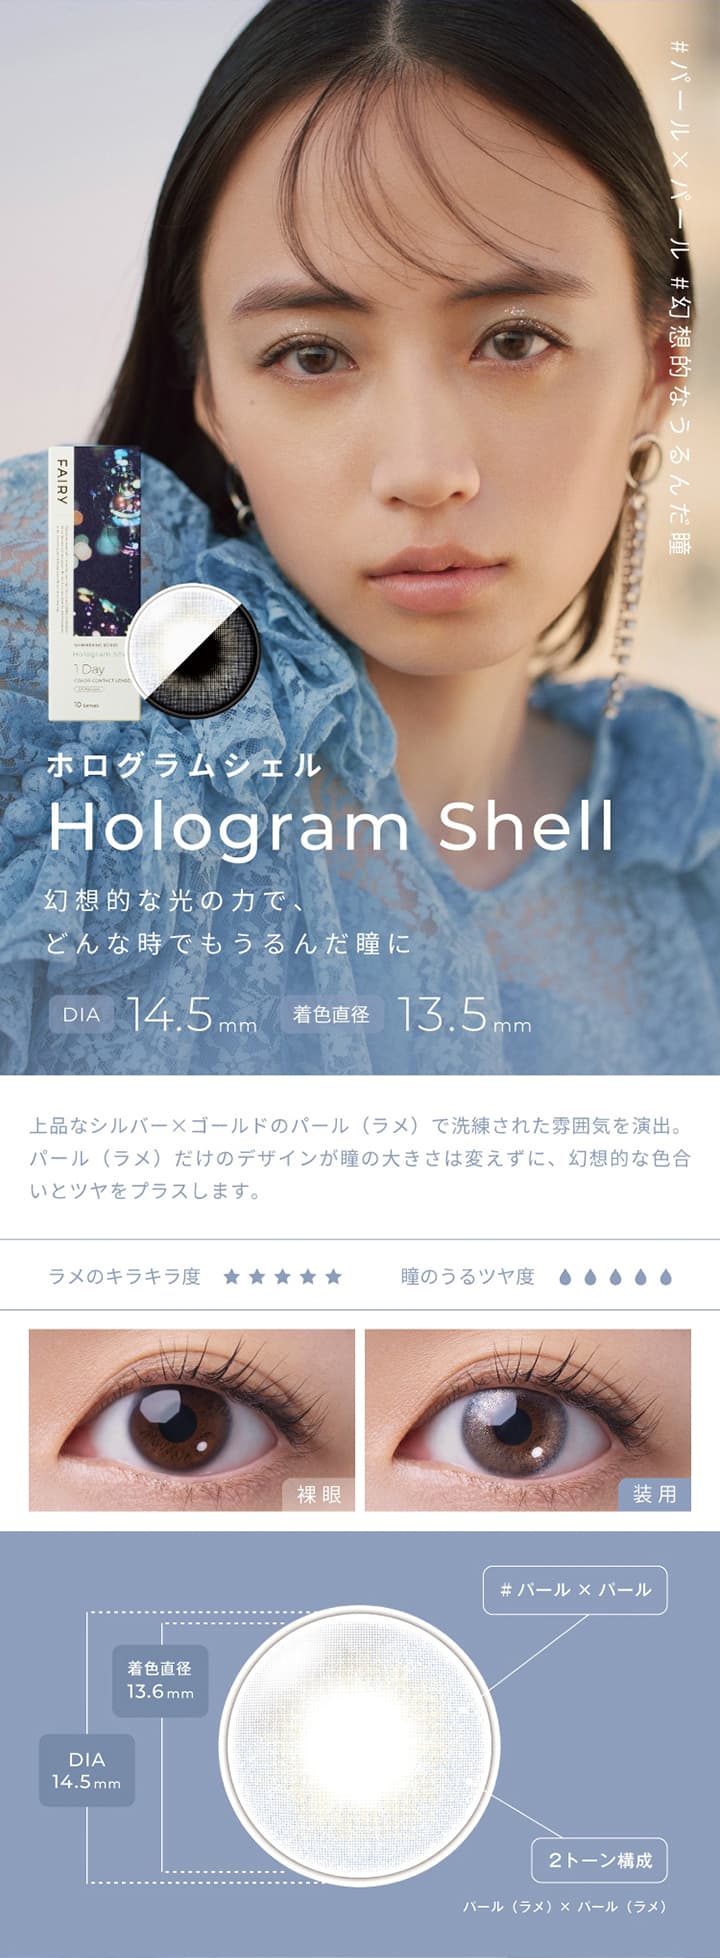 フェアリーシマーリングシリーズ  -ホログラムシェル (Hologram Shell)-